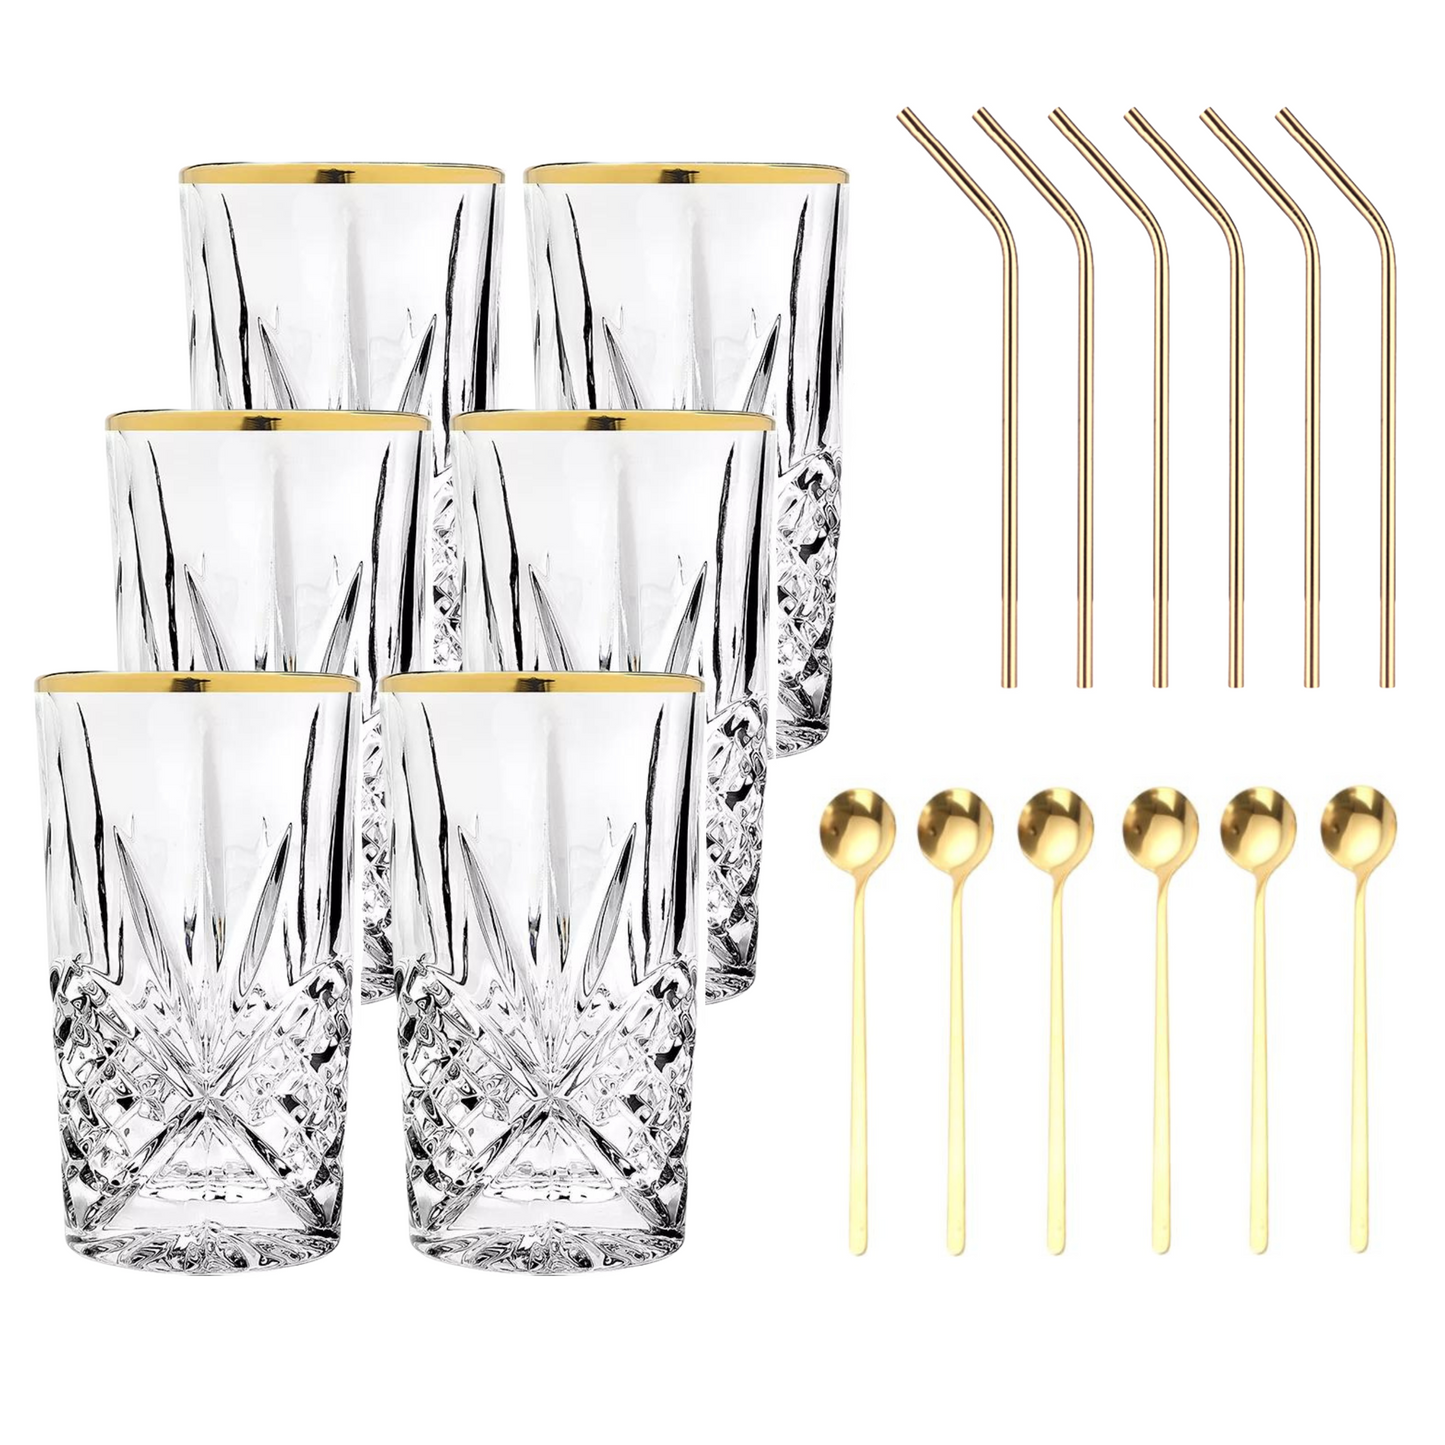 Set Luxus Kristall Latte Macchiato Gläser mit Goldrand 350ml Trinkgläser 6er Set "Star" mit goldenen Latte Macchiato Löffeln und goldenen Strohhalmen aus Edelstahl